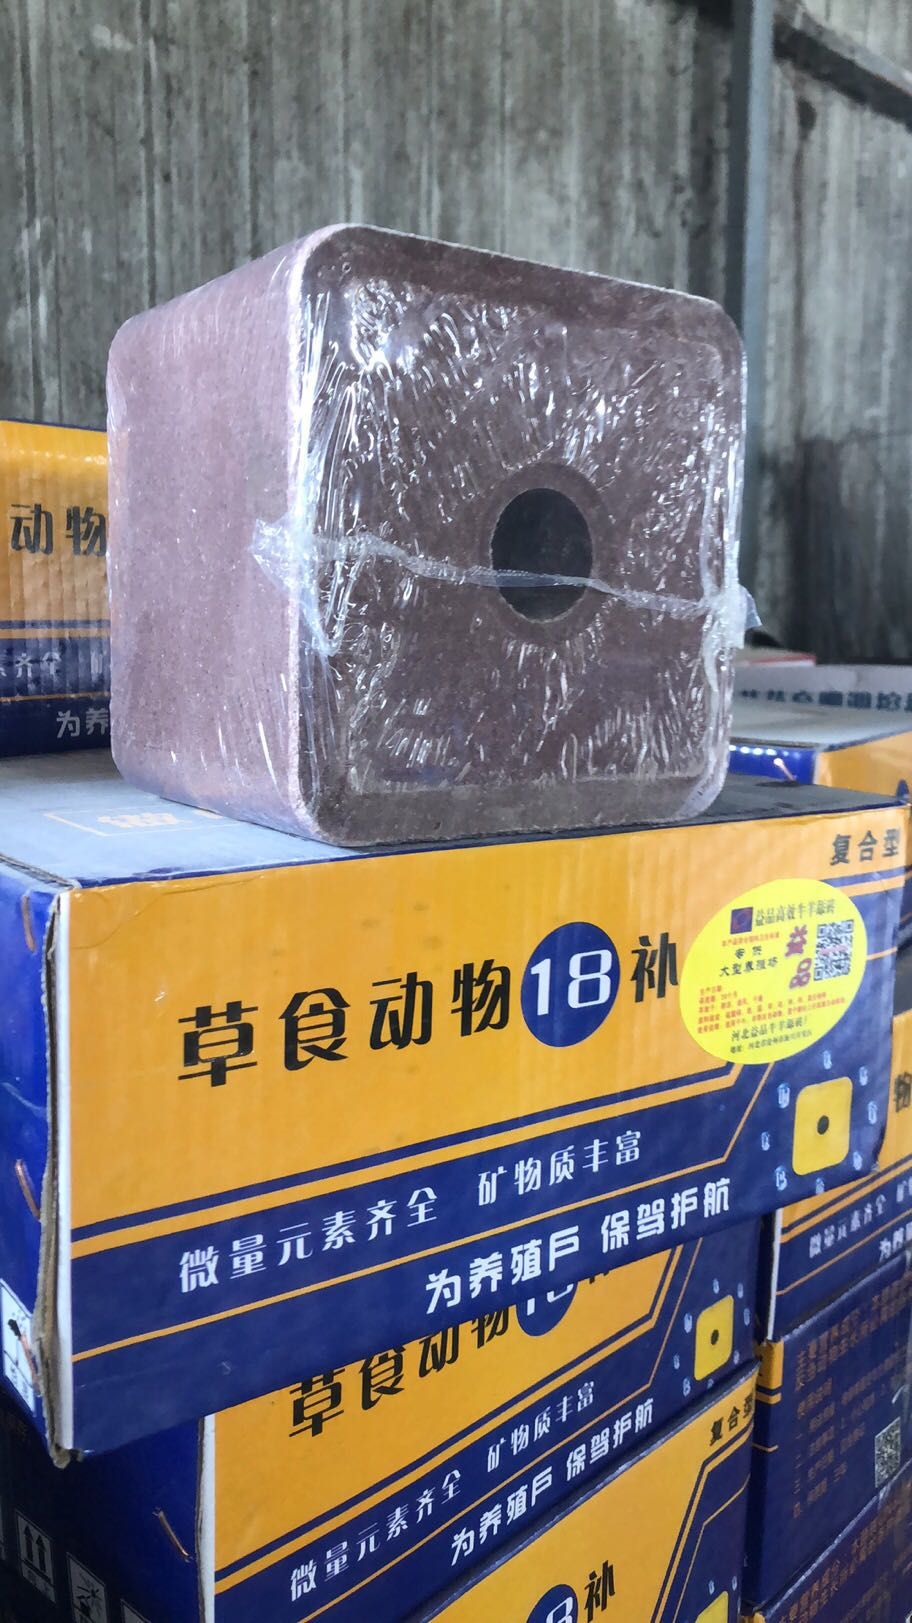 海兴县舔砖 草食动物18补结合牛羊所需添加的各种微量元素